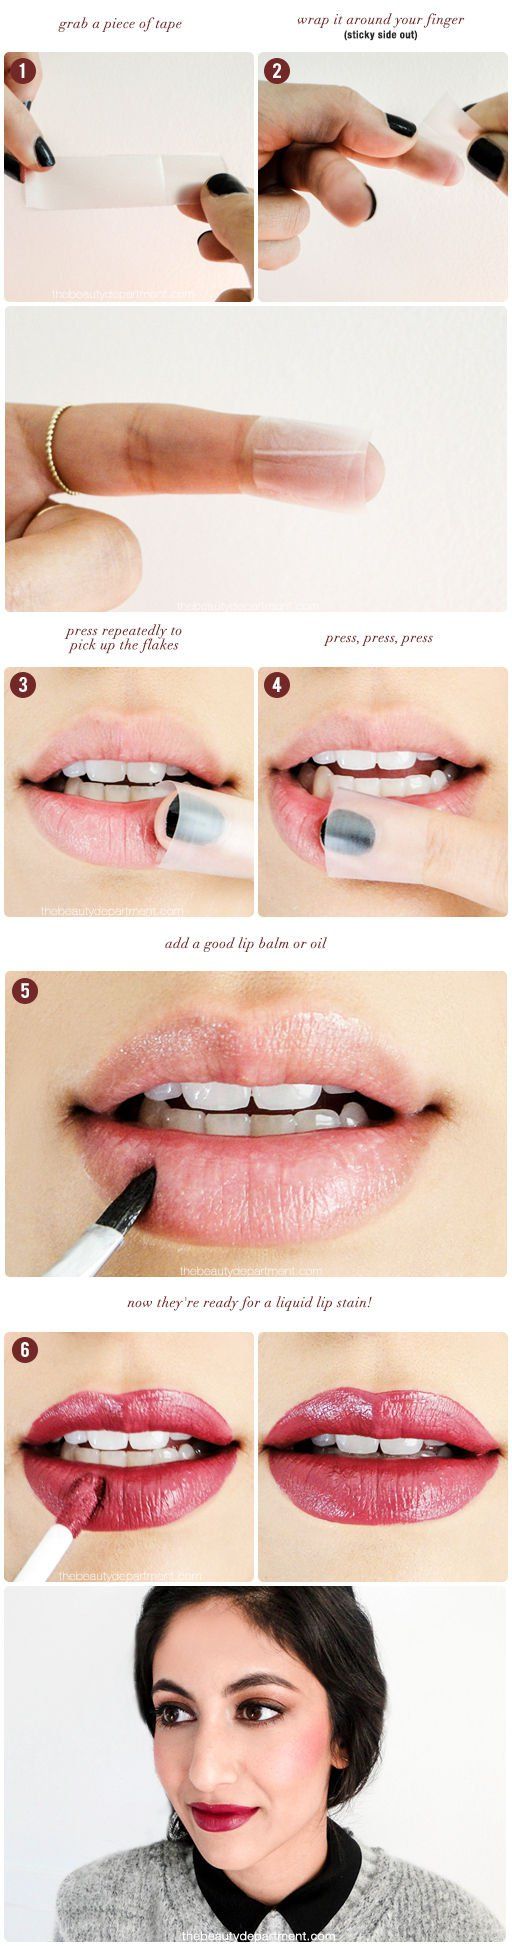 10 trucos de belleza que puedes hacer con cinta adhesiva 6